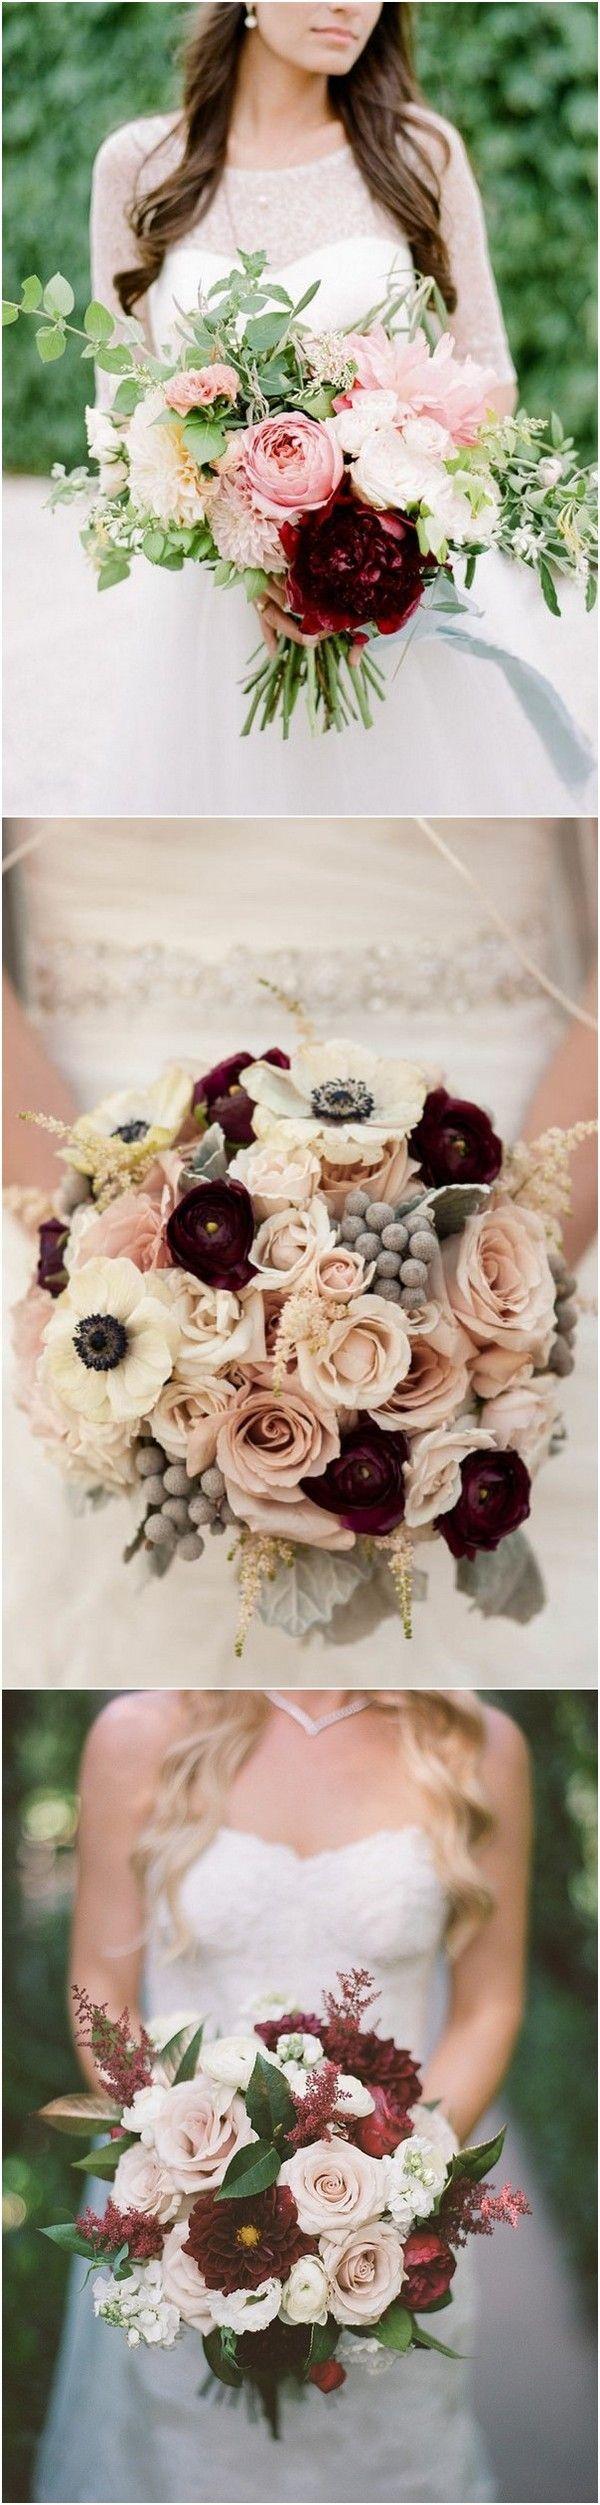 زفاف - Trending-15 Gorgeous Burgundy And Blush Wedding Bouquet Ideas - Page 3 Of 3